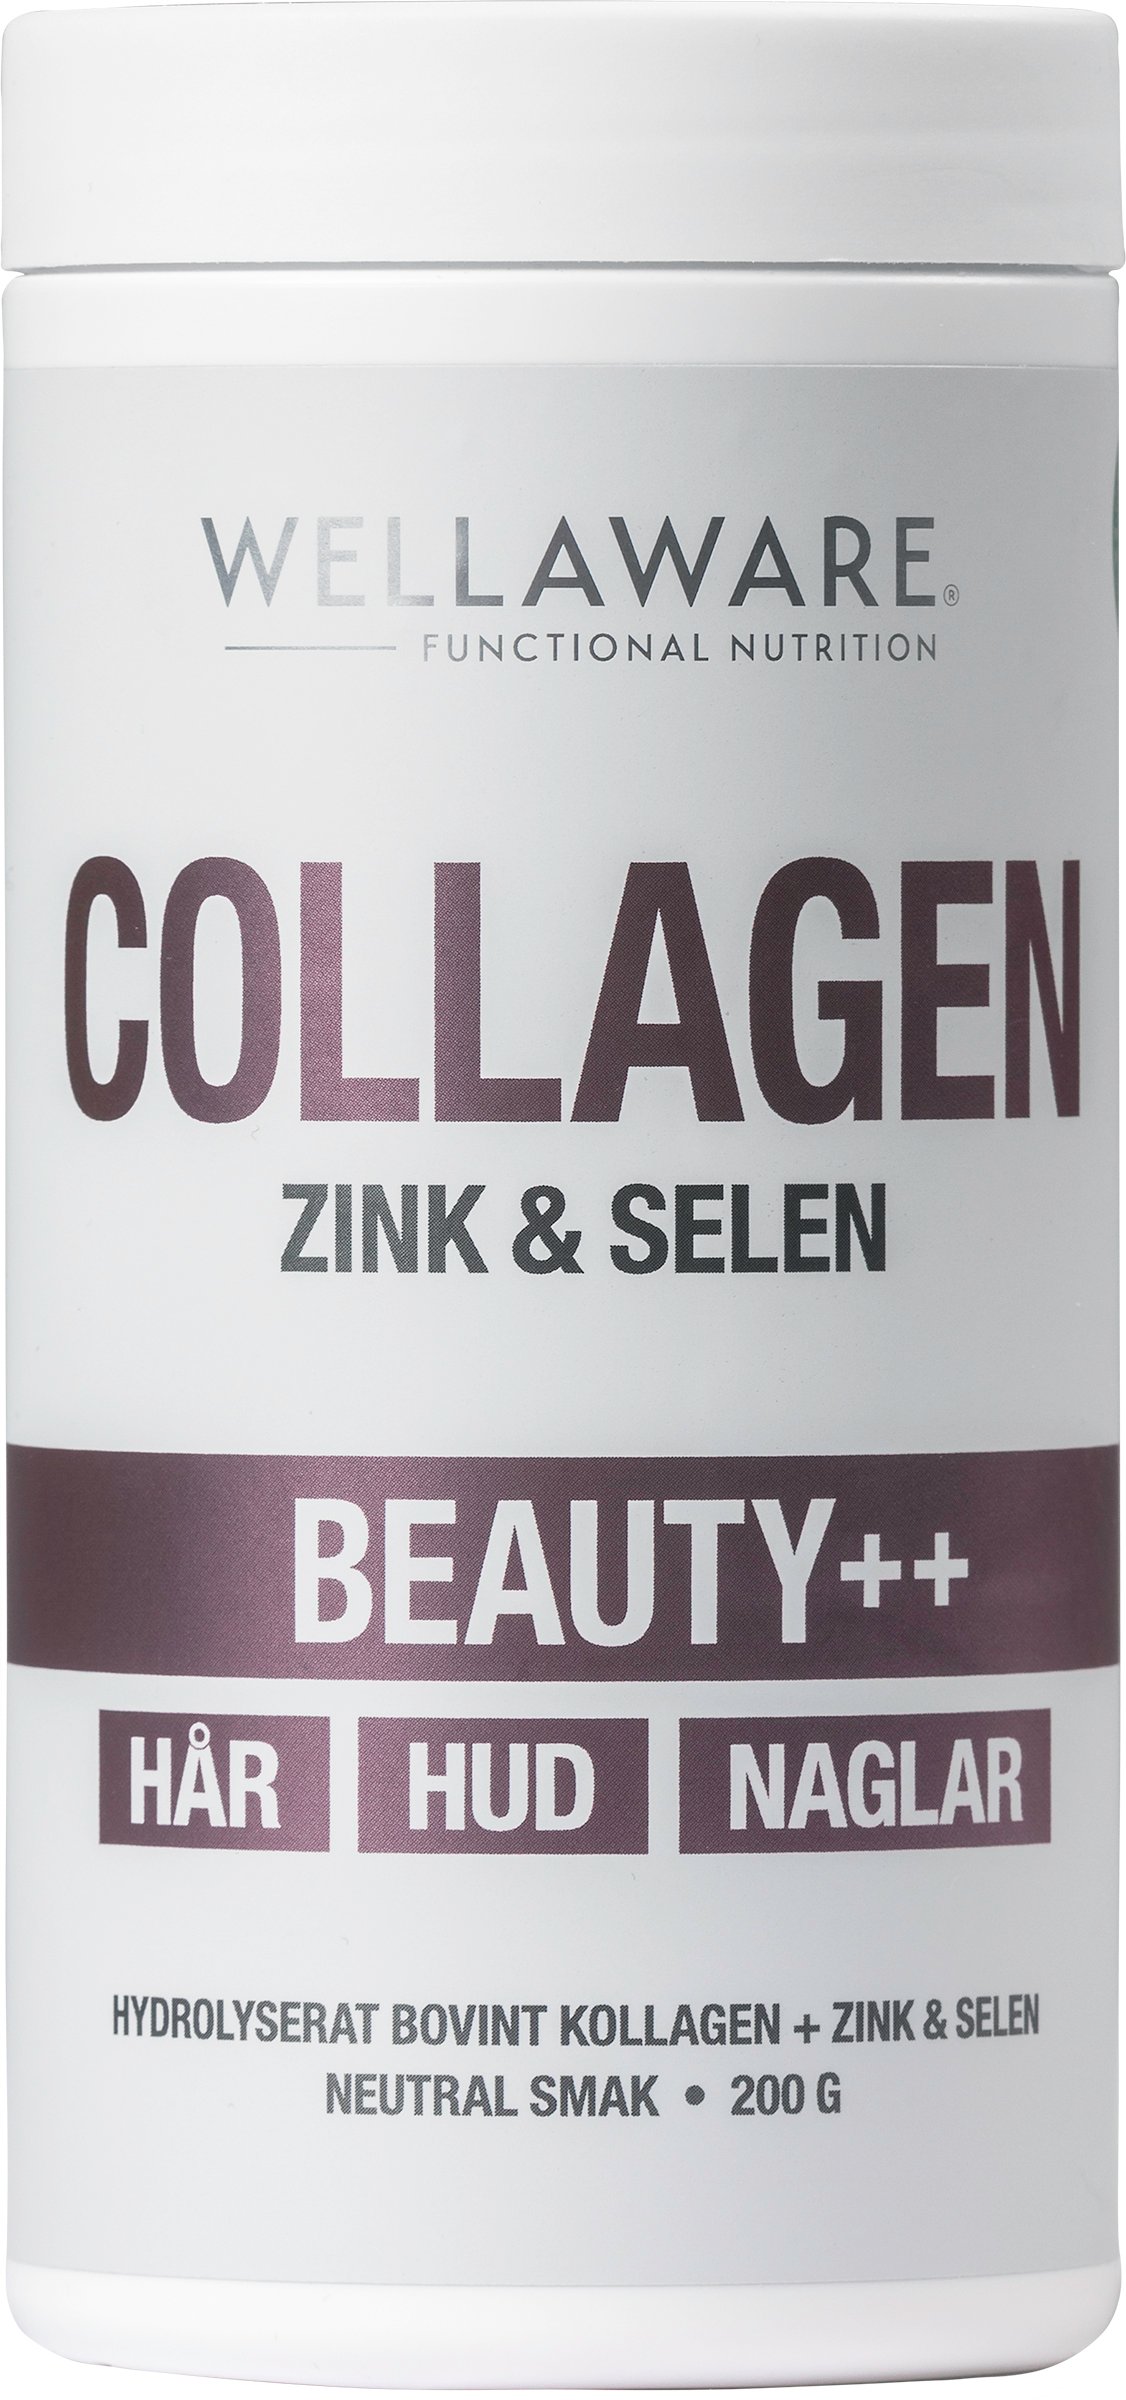 WellAware Collagen Beauty++ Zink & Selen 200 g